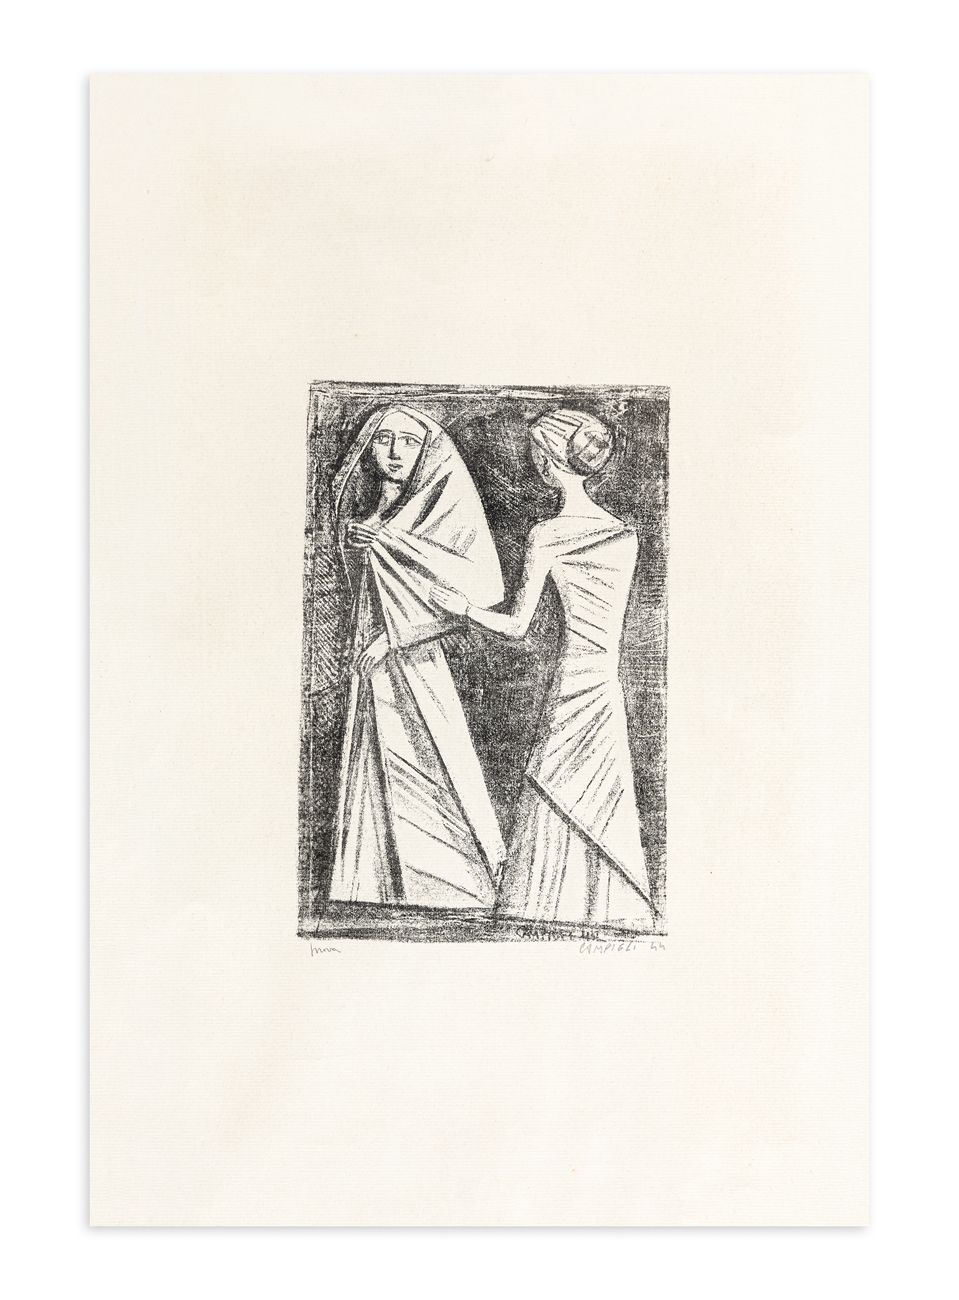 MASSIMO CAMPIGLI (1895-1971) - Preghiera ad Afrodite, 1944 Litografía

48x32 cm
&hellip;